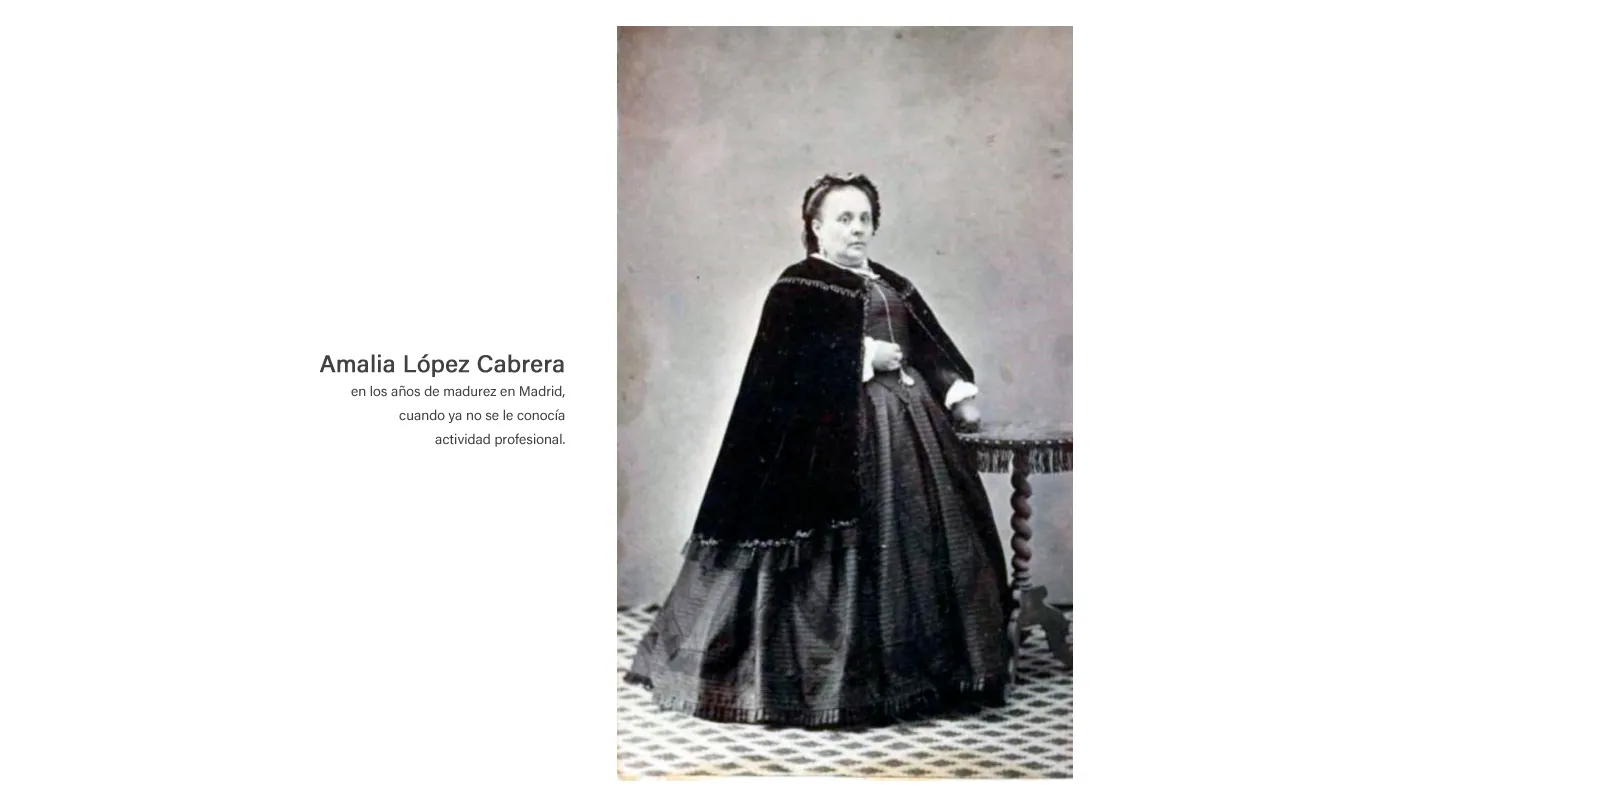 Amalia López Cabrera